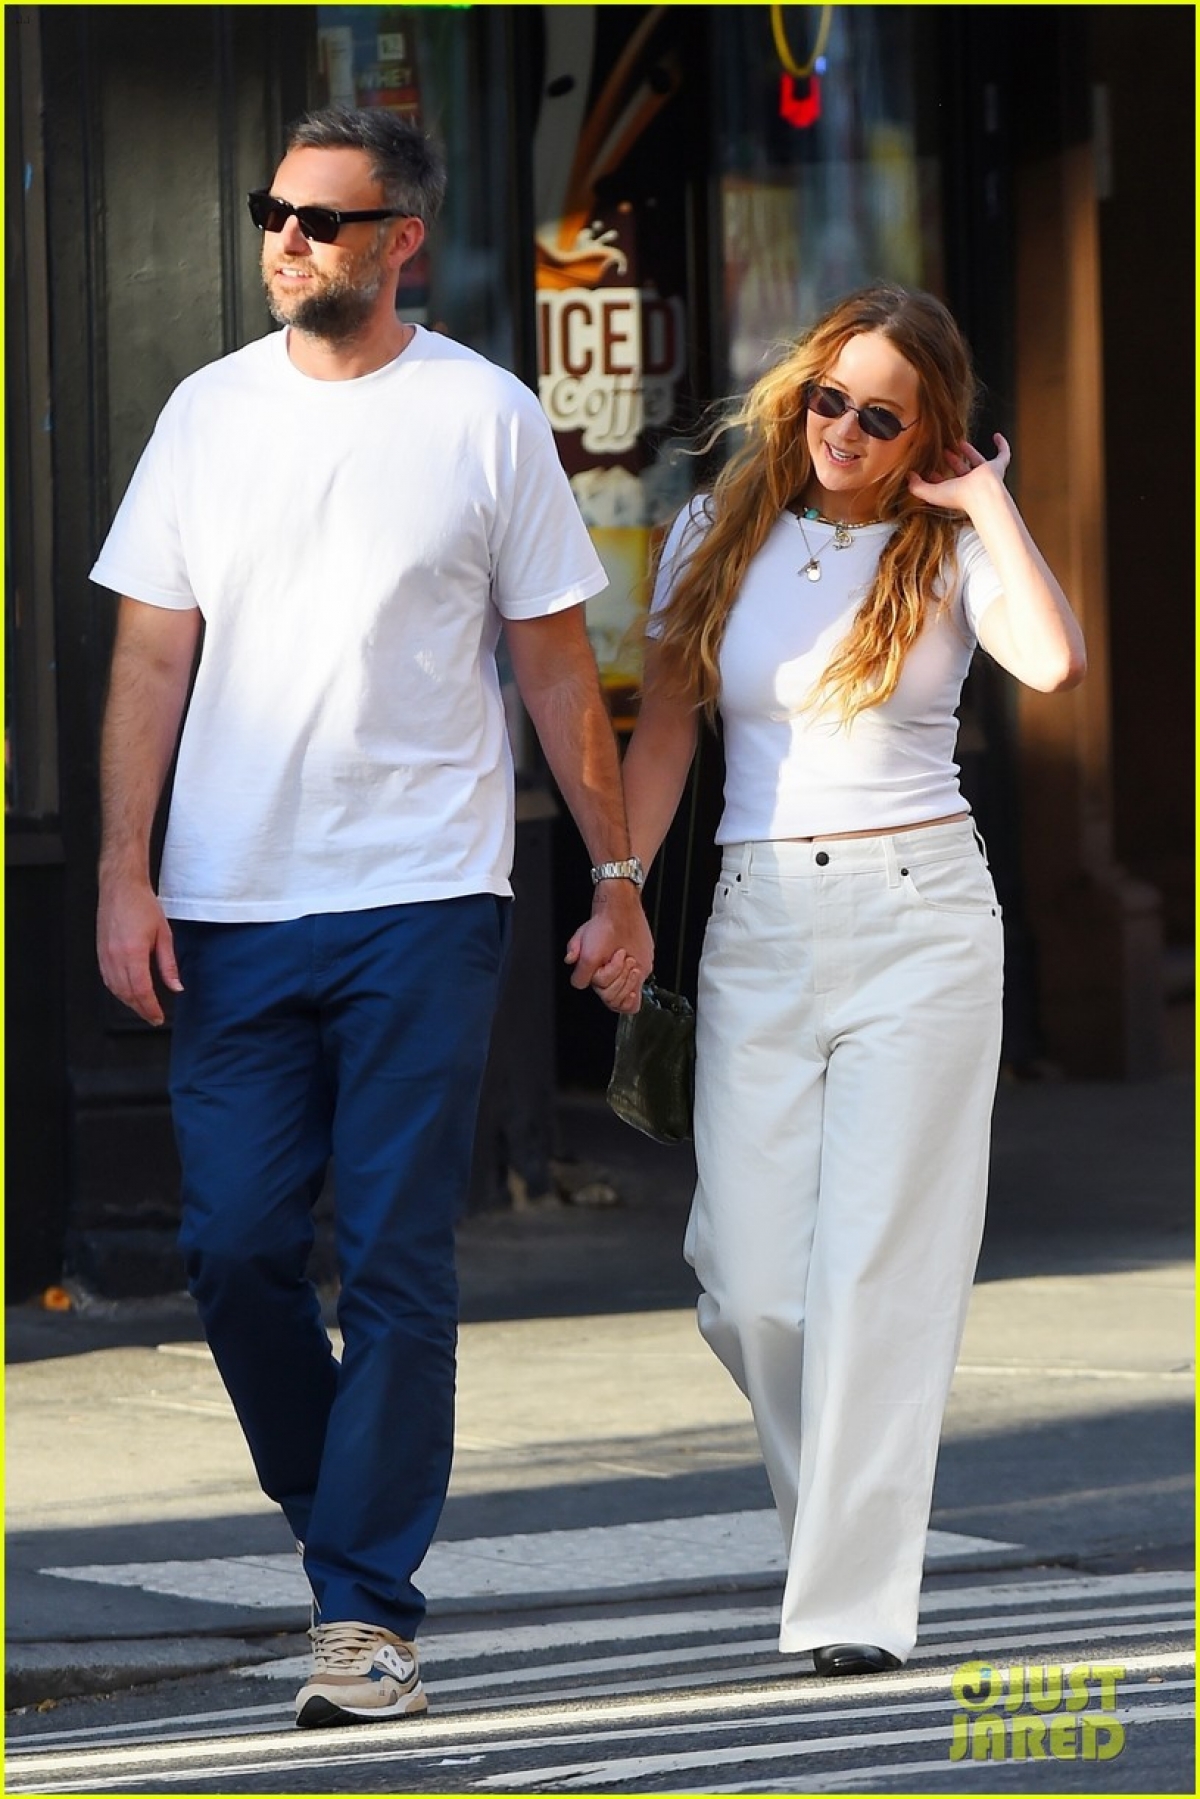 Vợ chồng Jennifer Lawrence diện đồ đồng điệu, tình tứ đi dạo trong công viên - Ảnh 4.